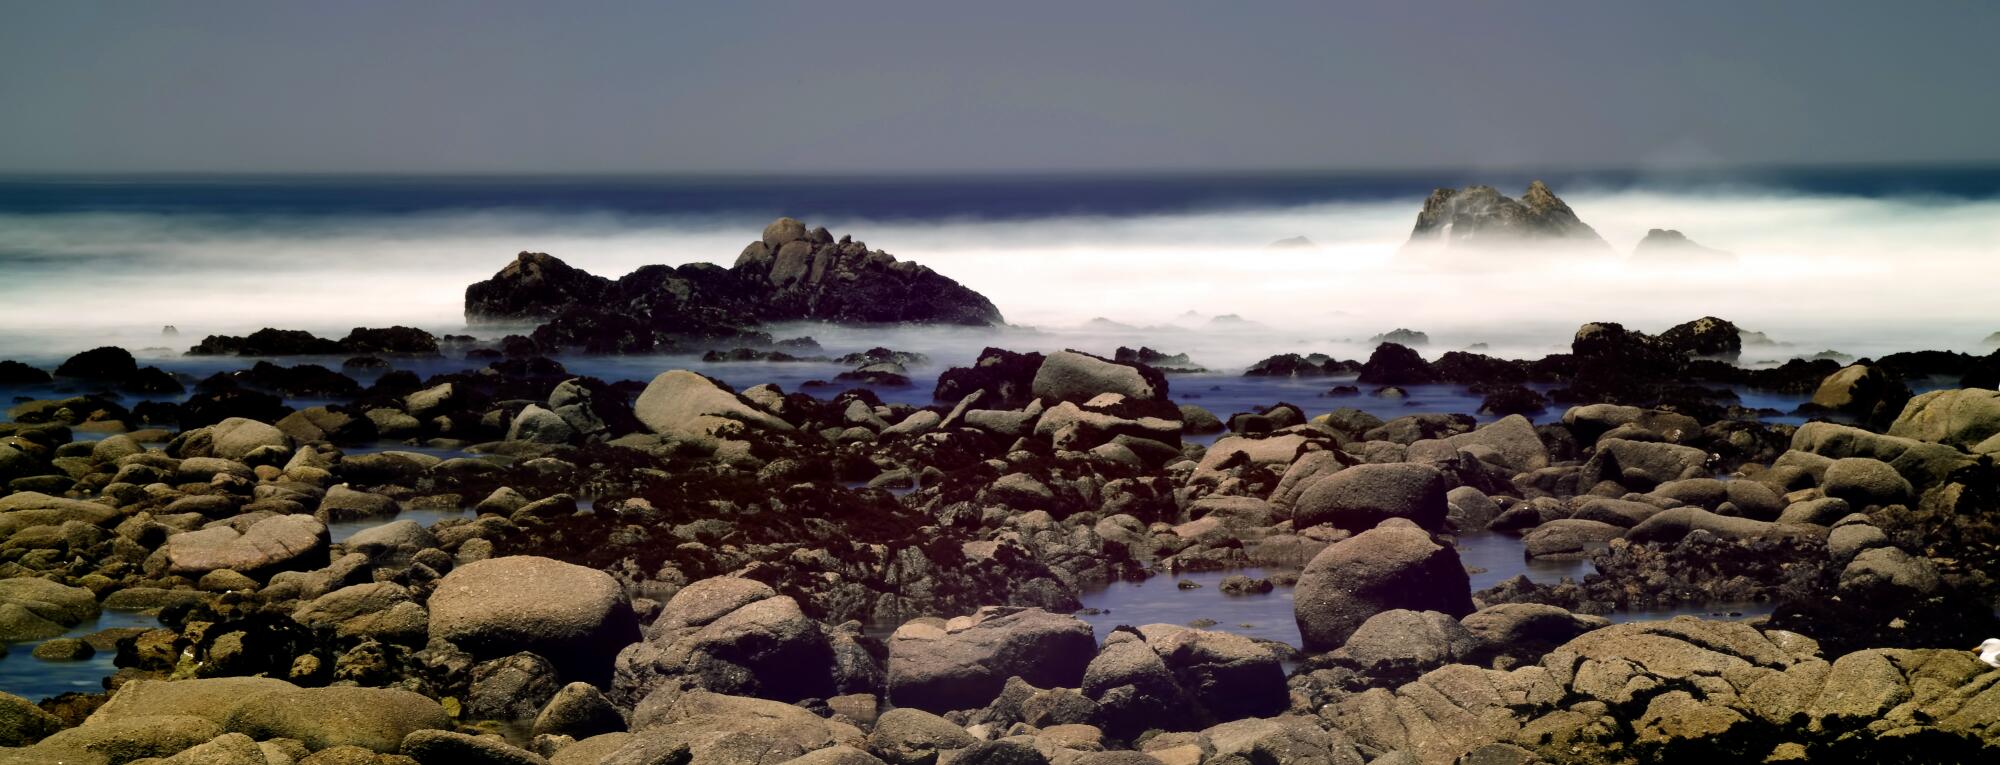 Rocks meet the ocean in an eerie-looking photo.